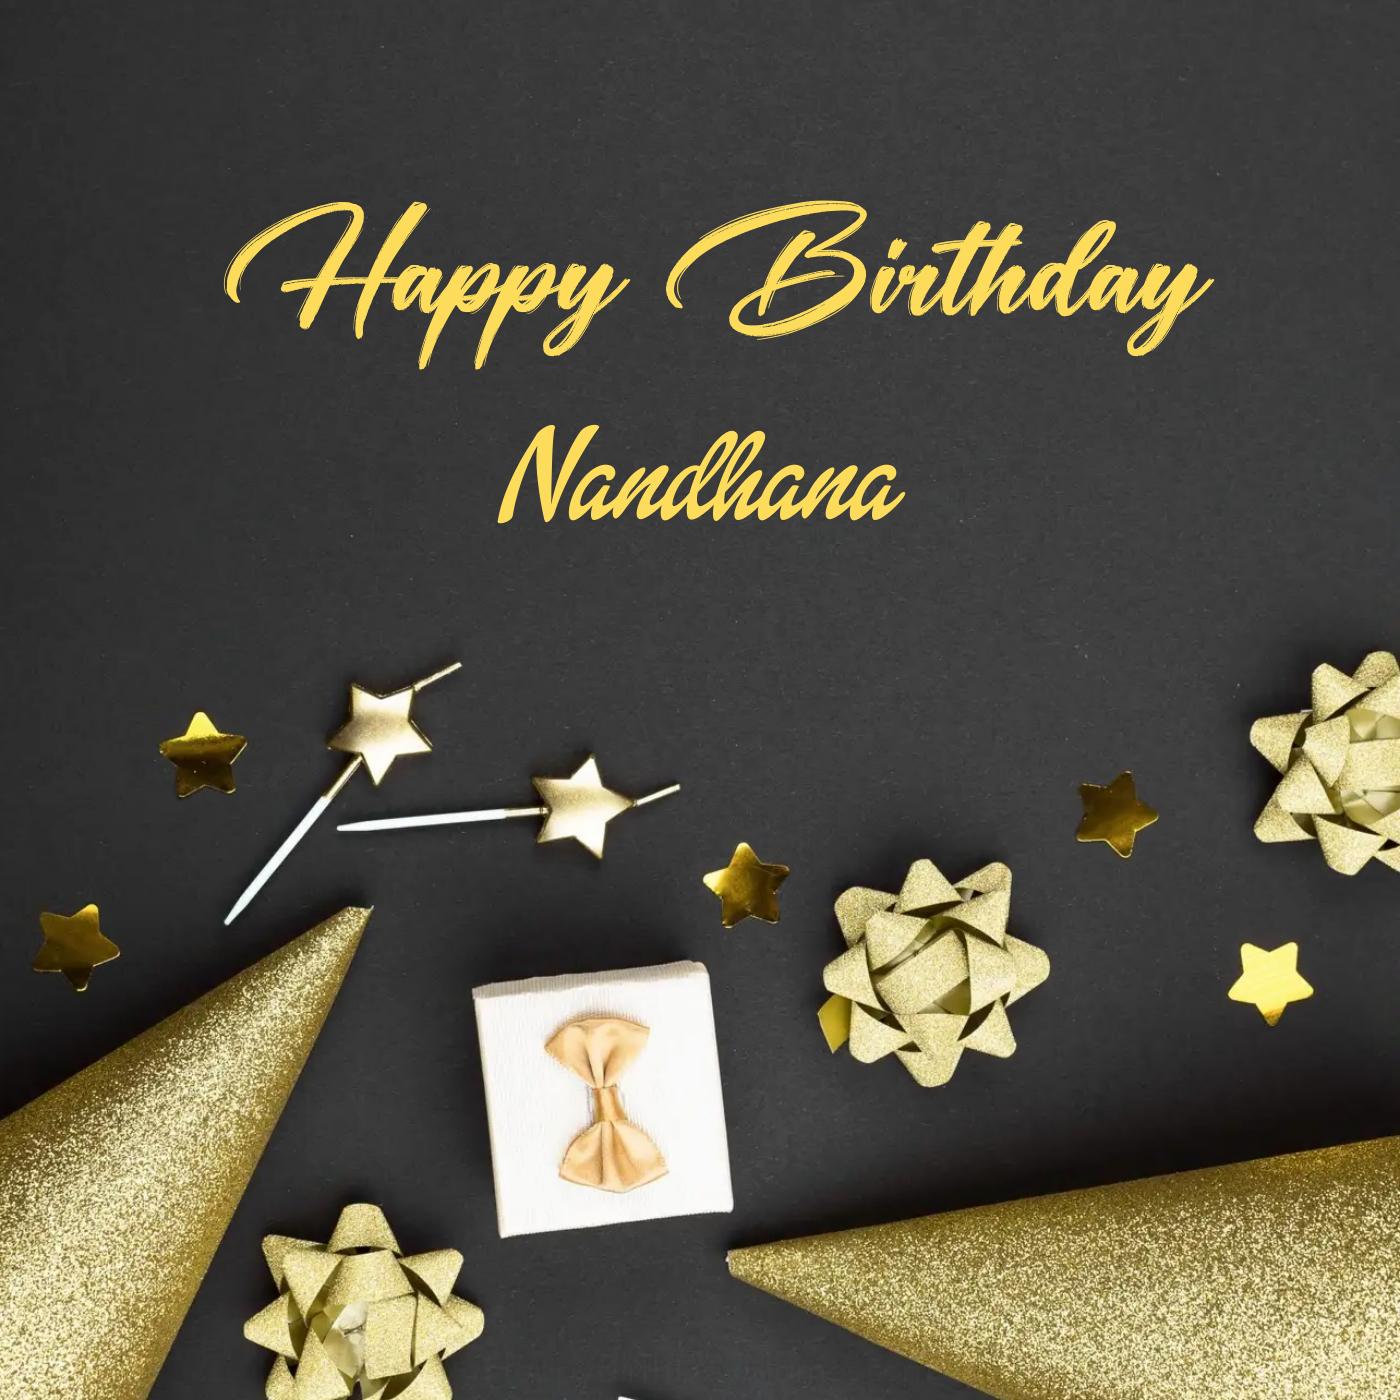 Happy Birthday Nandhana Golden Theme Card